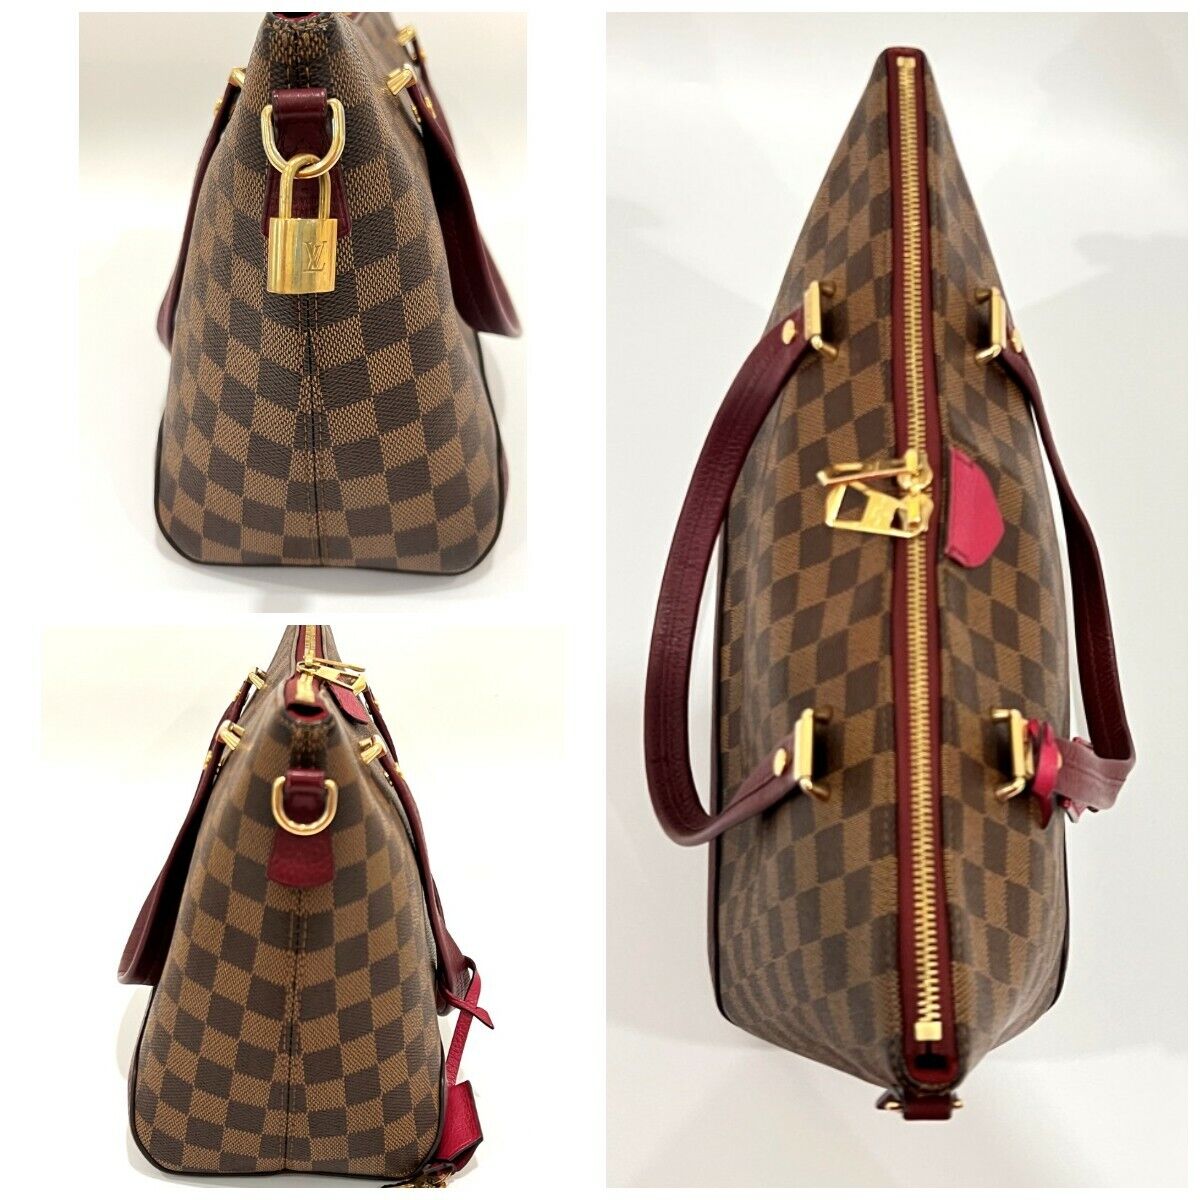 Louis Vuitton Damien Ebene Authentic handbag Buy it now Excellent Condition